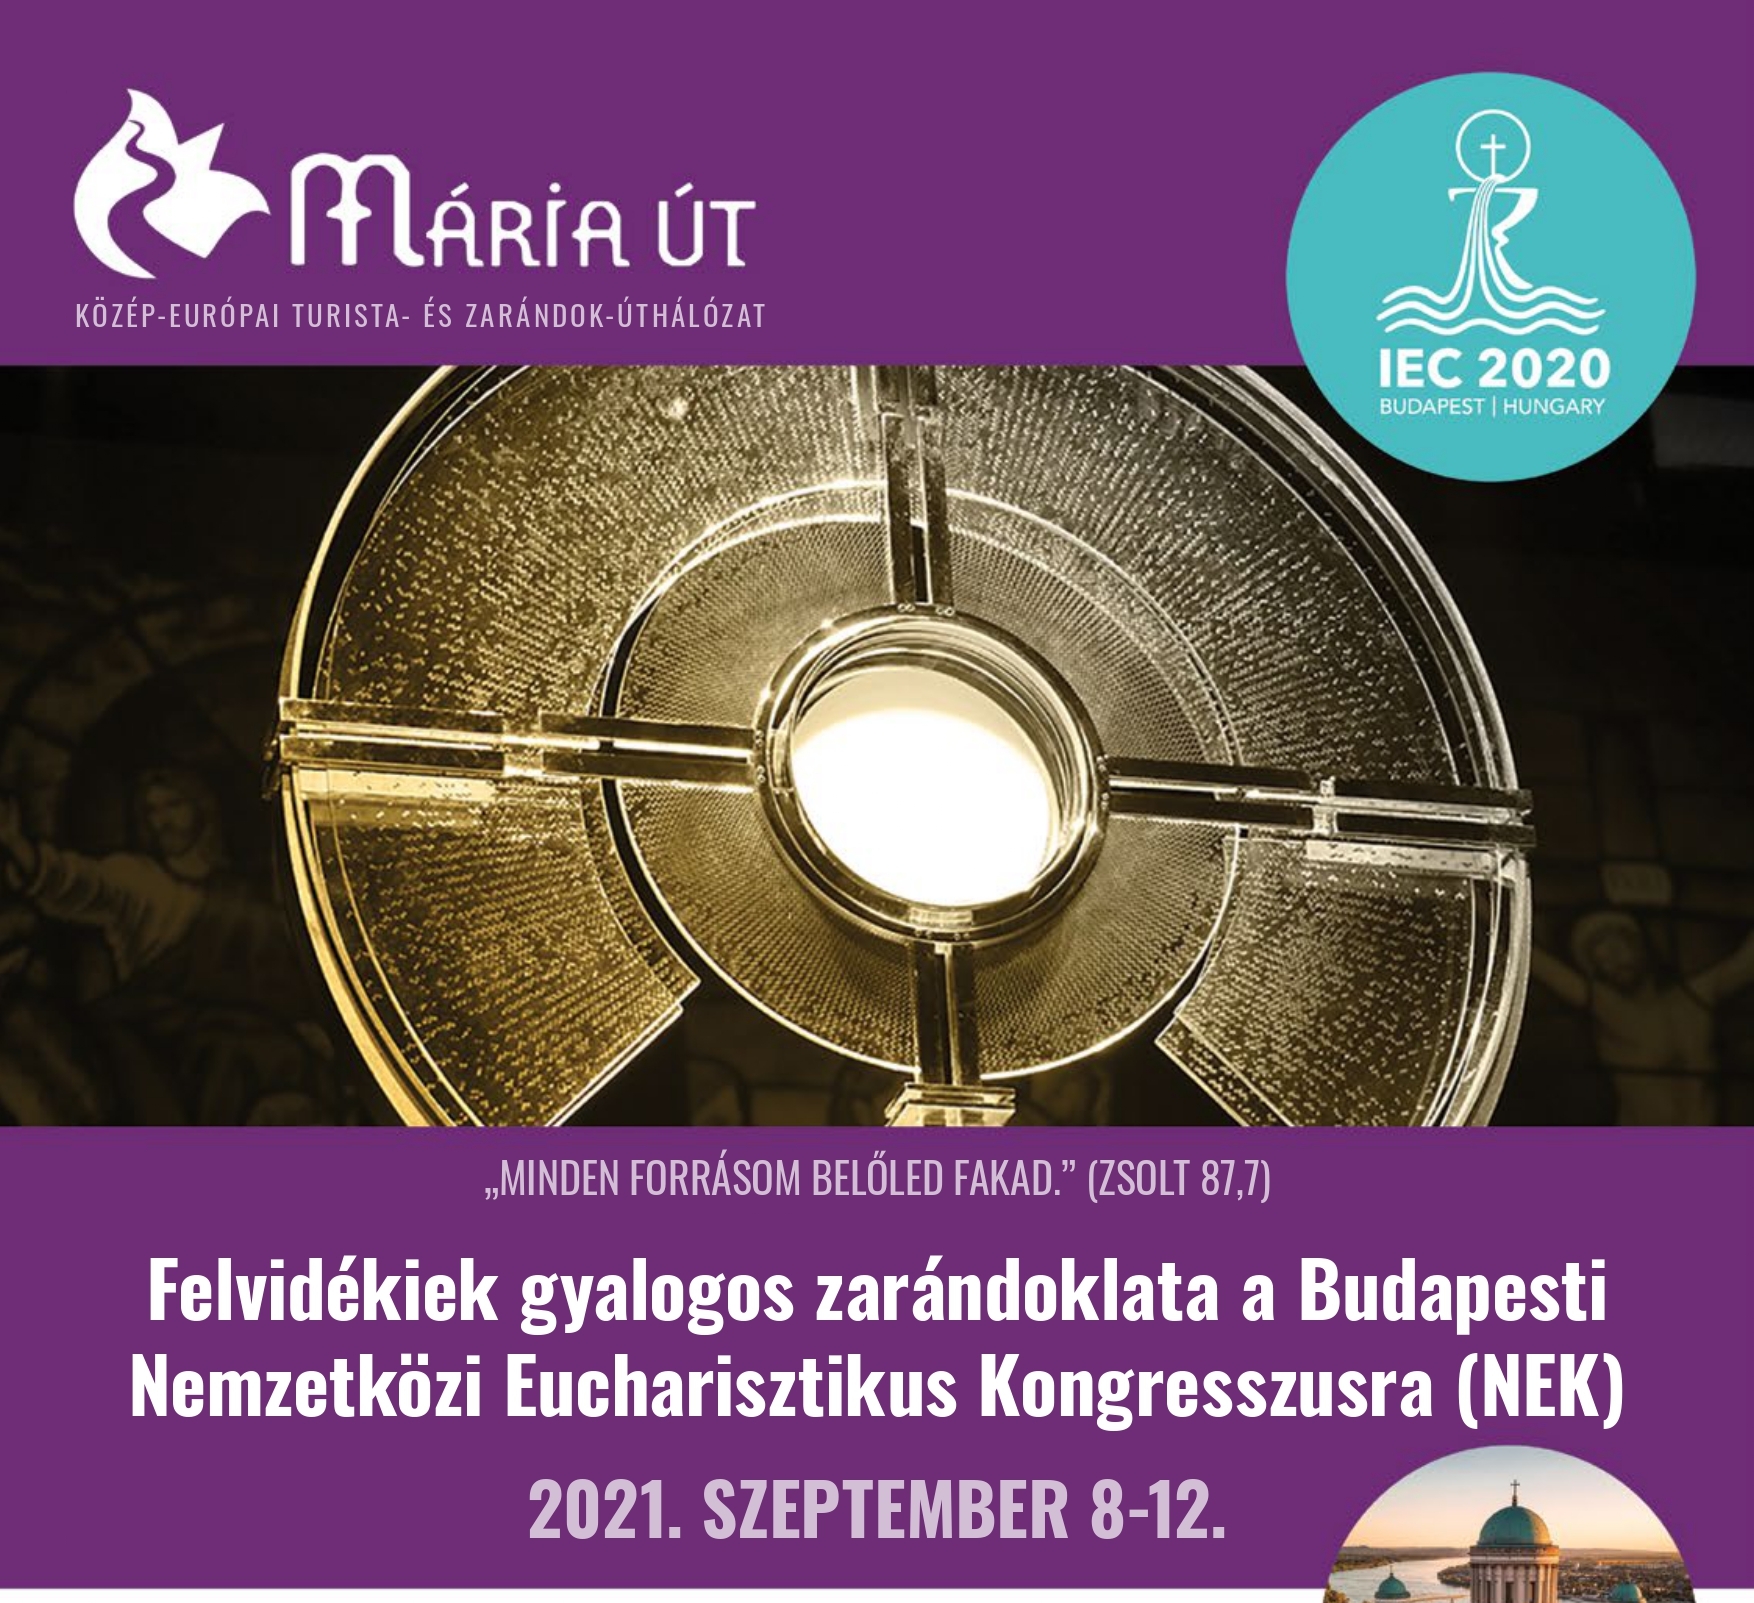 Felvidékiek gyalogos zarándoklata a Budapesti Nemzetközi Eucharisztikus Kongresszusra (NEK)